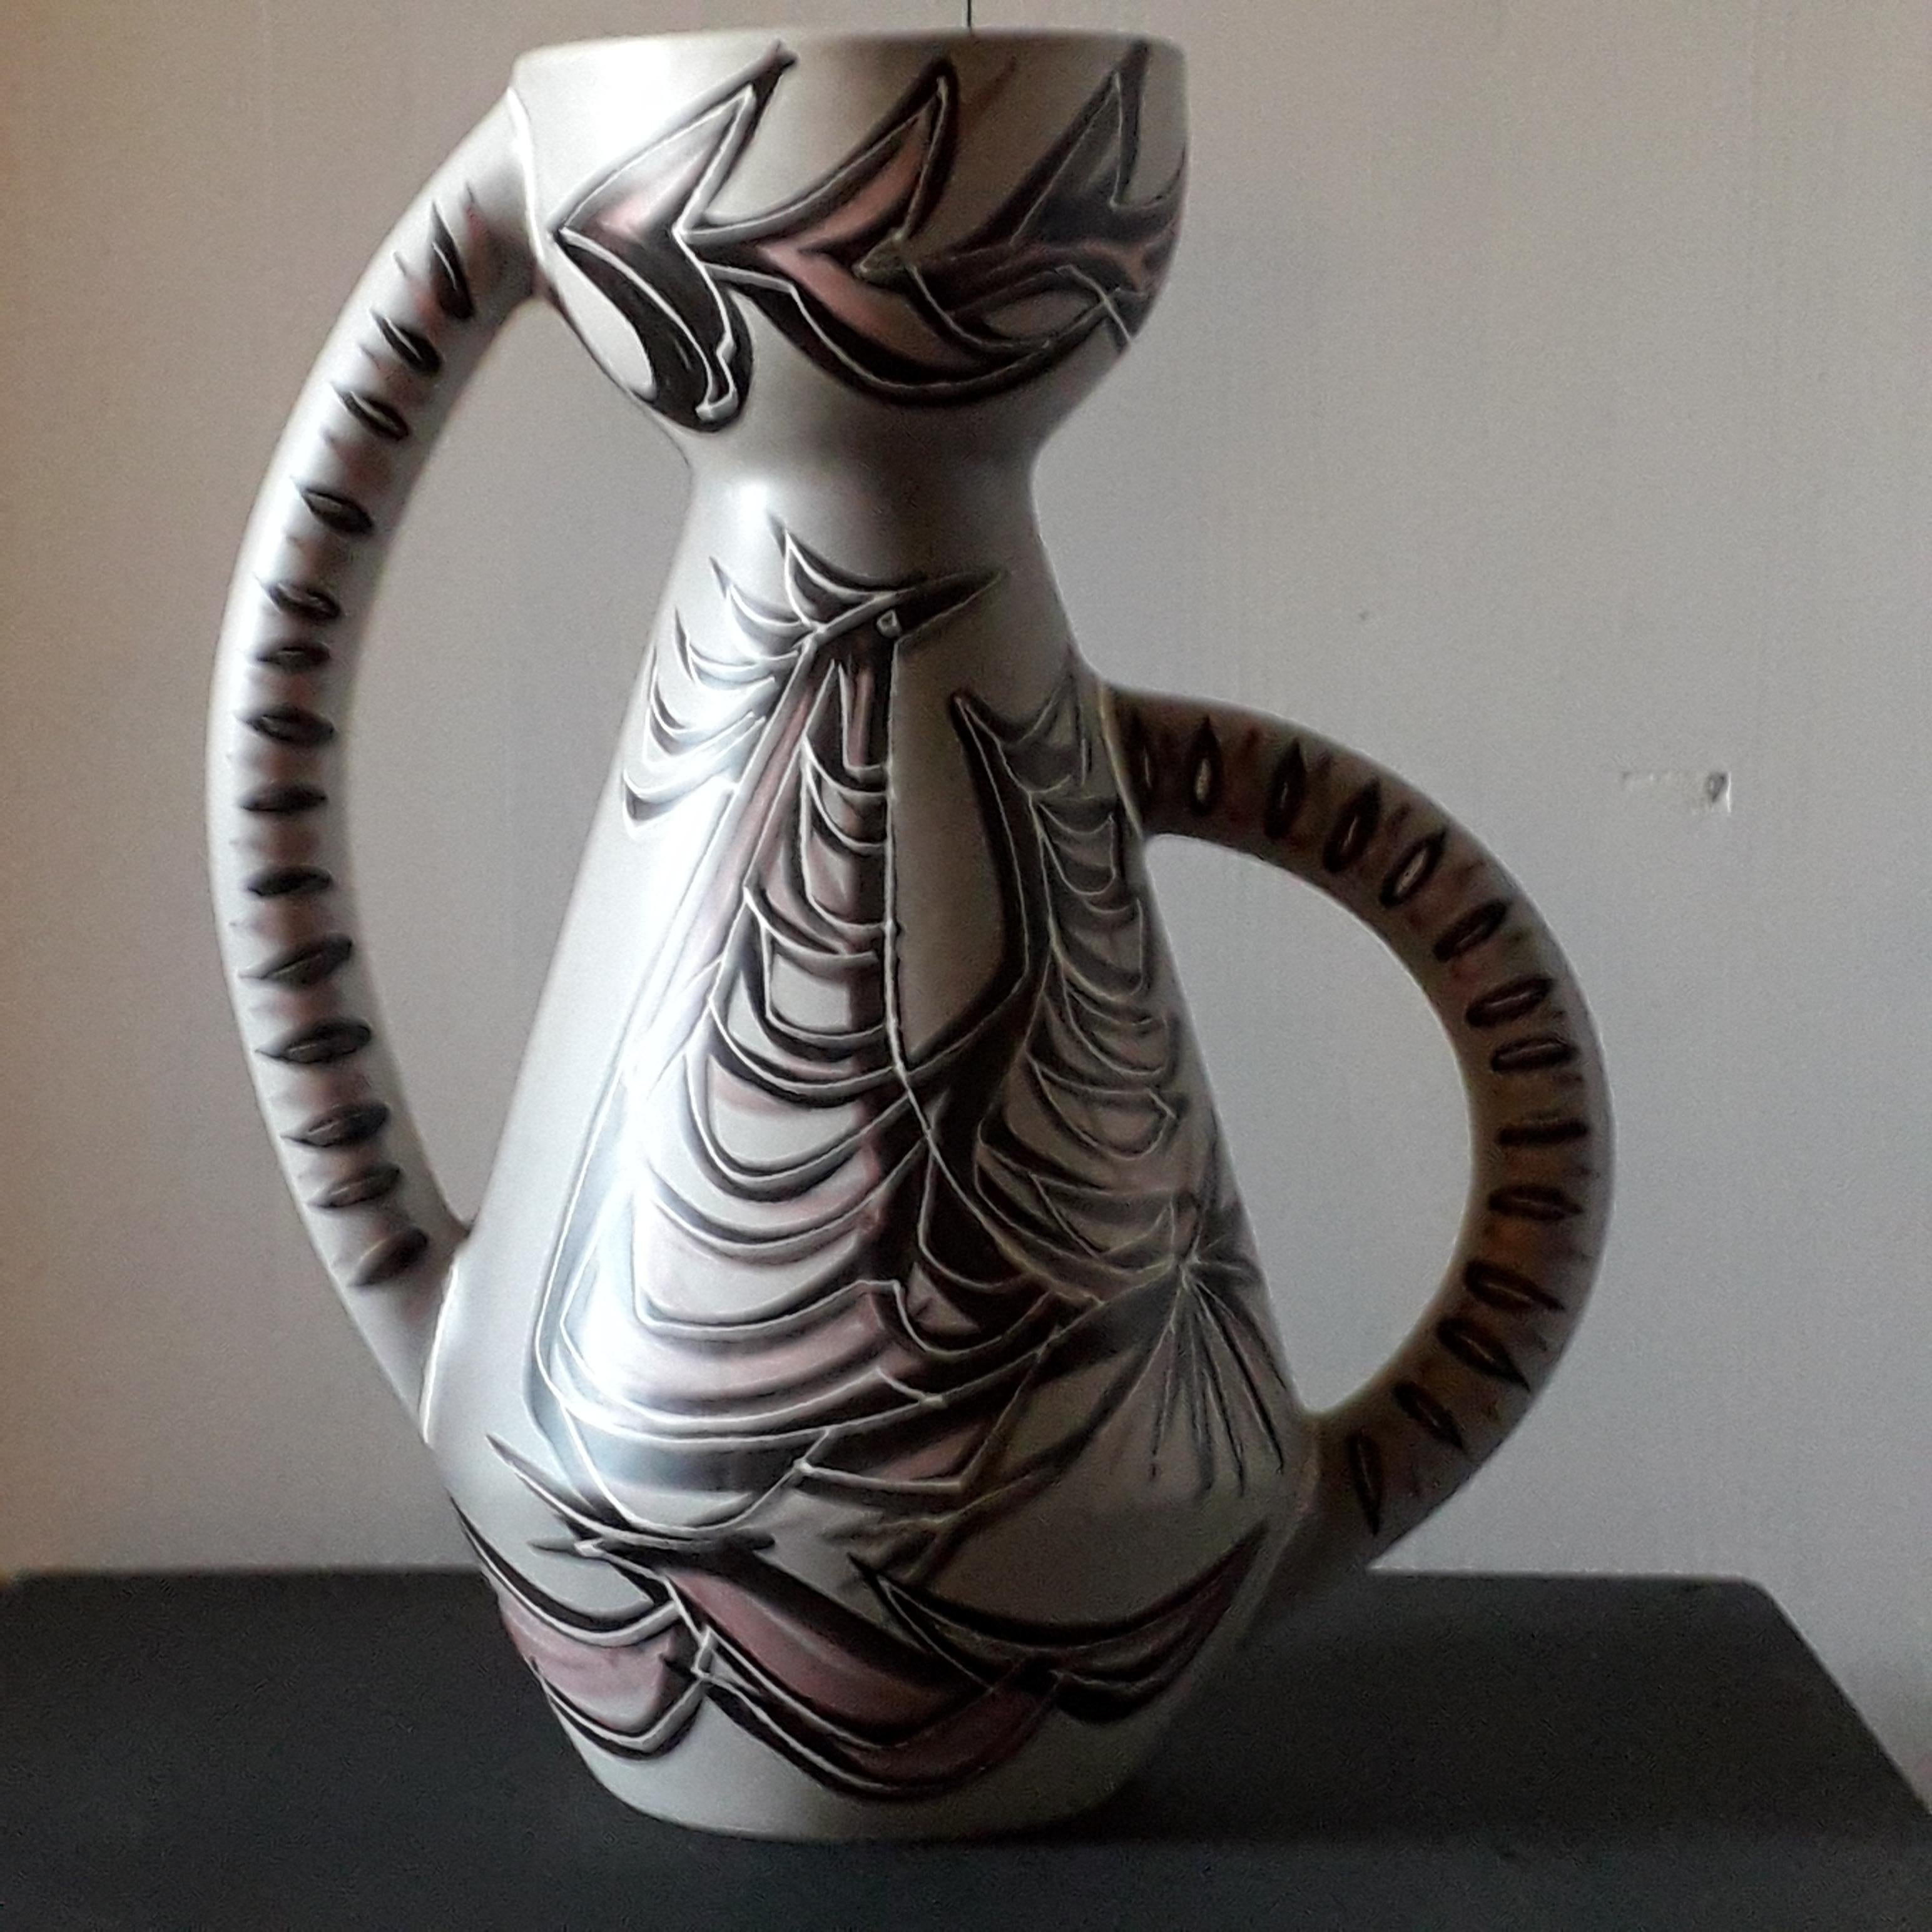 Große Vase mit doppeltem Henkel aus Keramik, stilisierter Hahn auf grauem Grund im Stil von Hélène Ugo.
Signiert vom Künstler, GB Vallauris Ghislaine Bélio Keramiker in den 2000er Jahren.
Maße: Höhe 40 cm / Durchmesser 33 cm.
In ausgezeichnetem